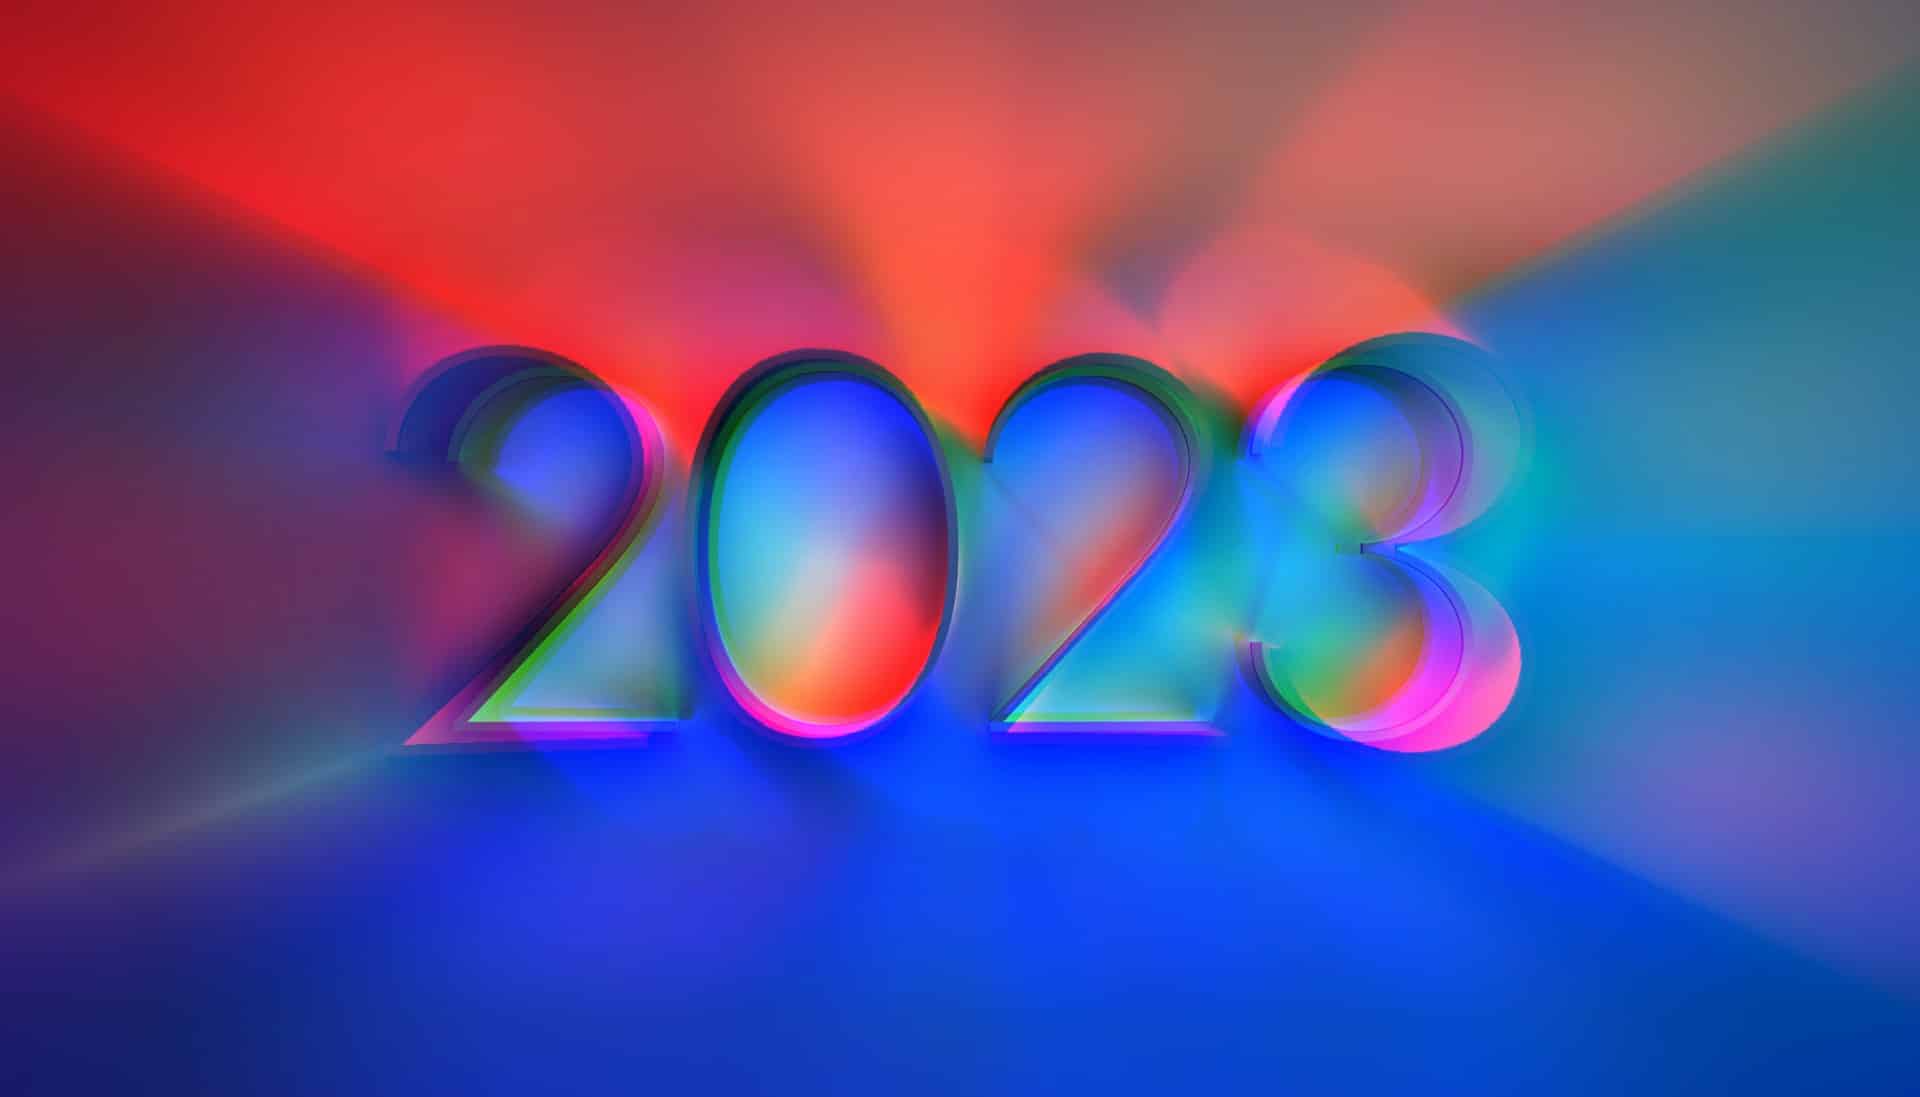 محاسبه عددشناسی 2023: شماره سال شخصی و پیامدهای آن